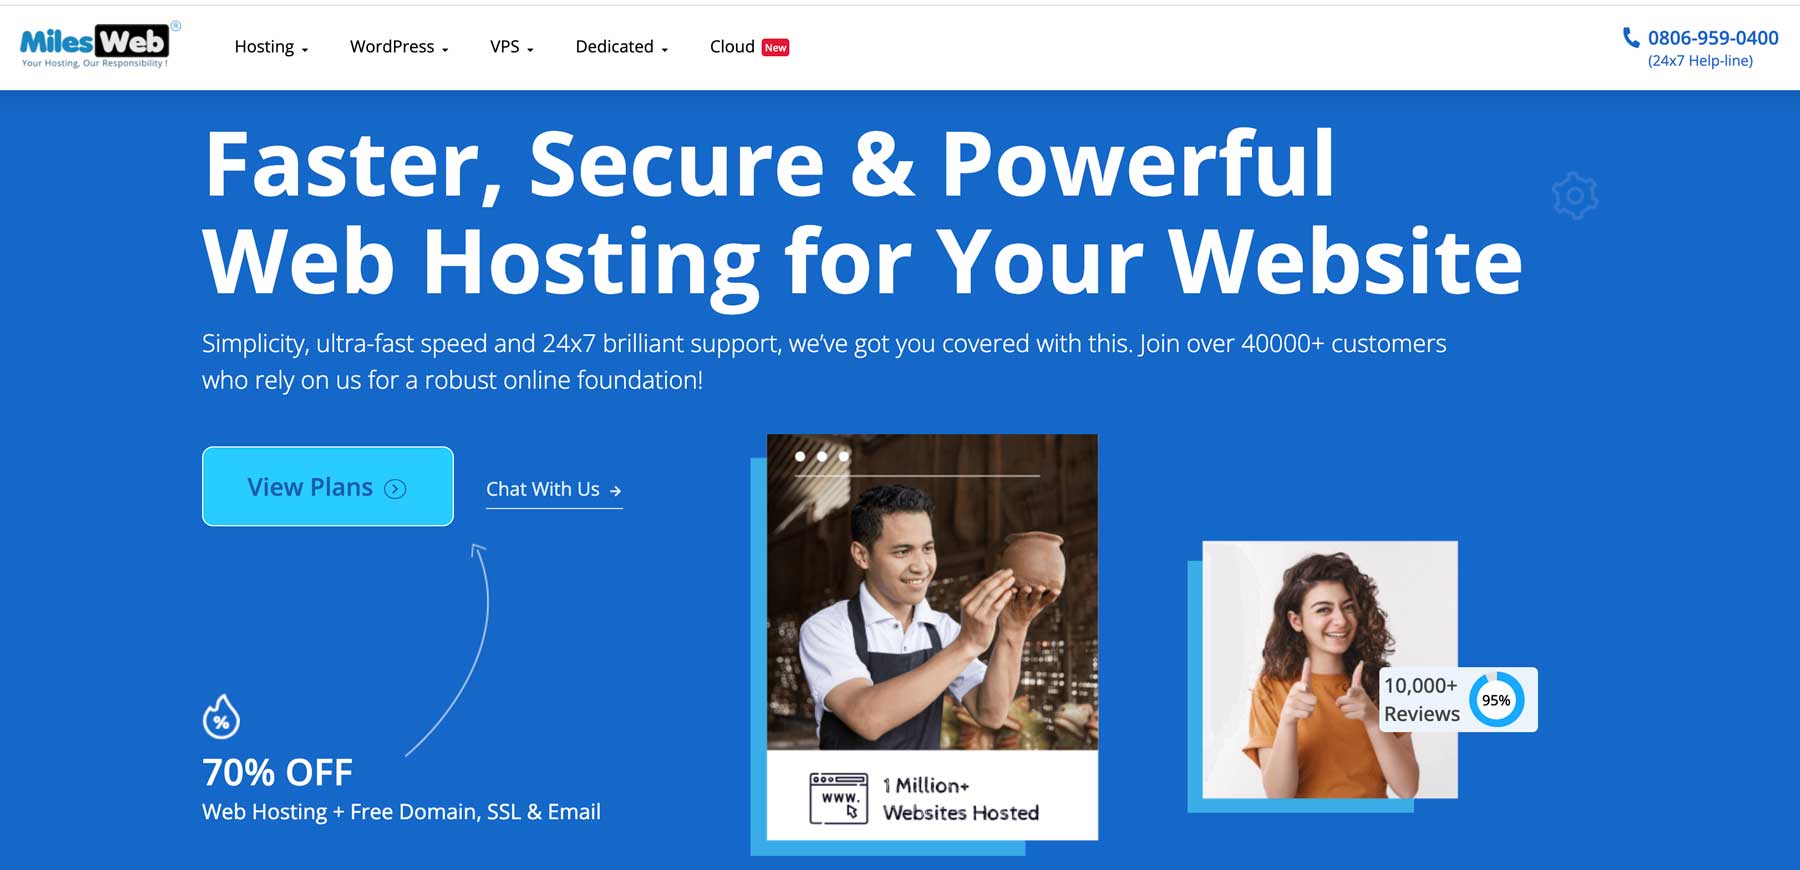 Milesweb AWS hosting